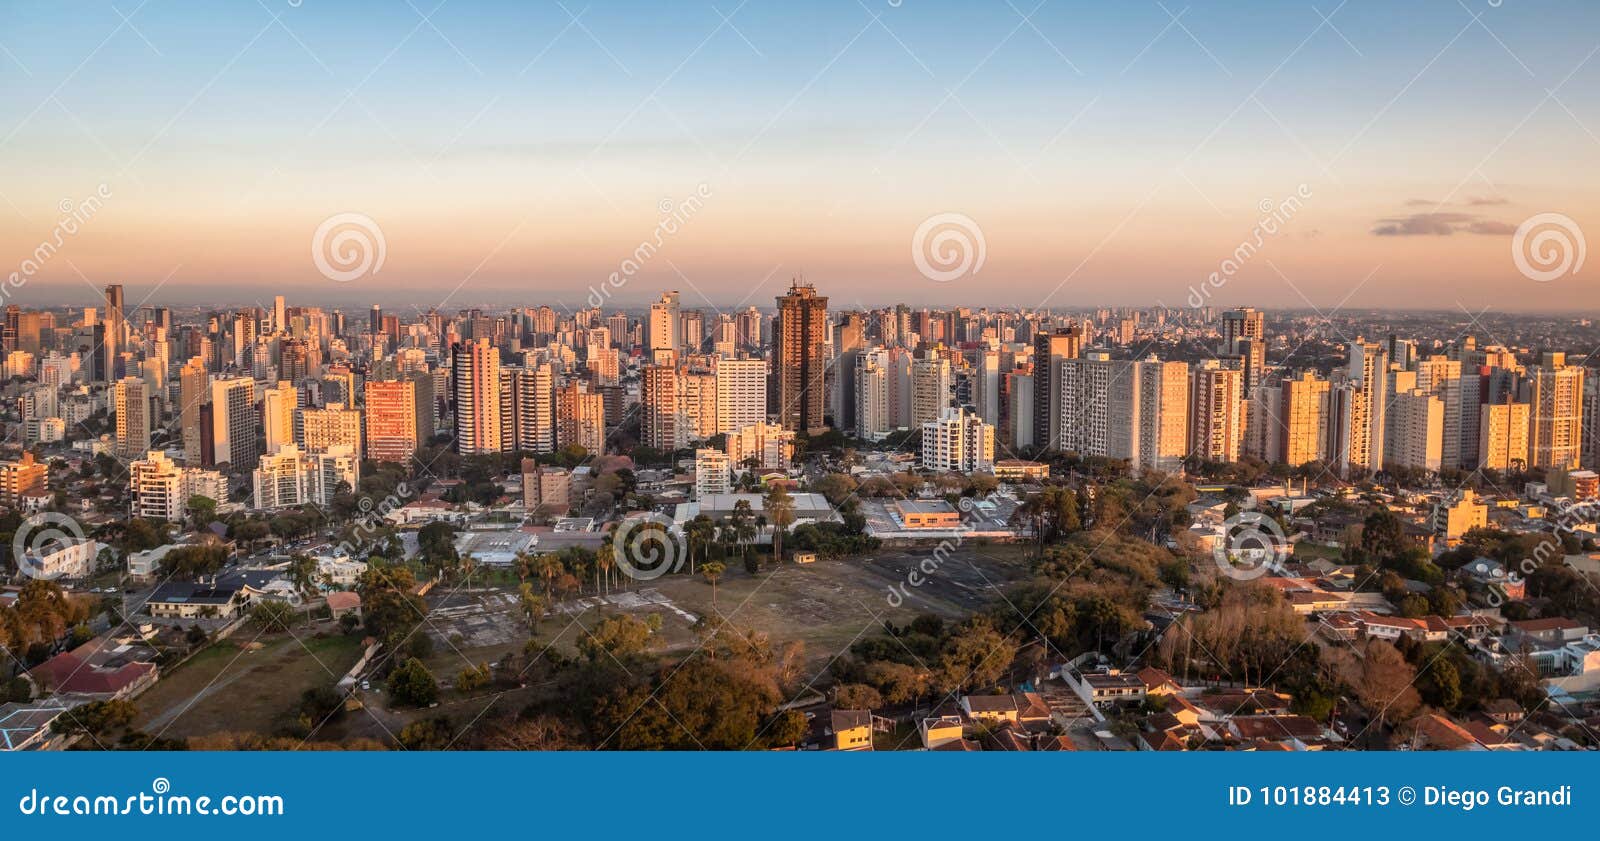 aerial view of curitiba city at sunset - curitiba, parana, brazil